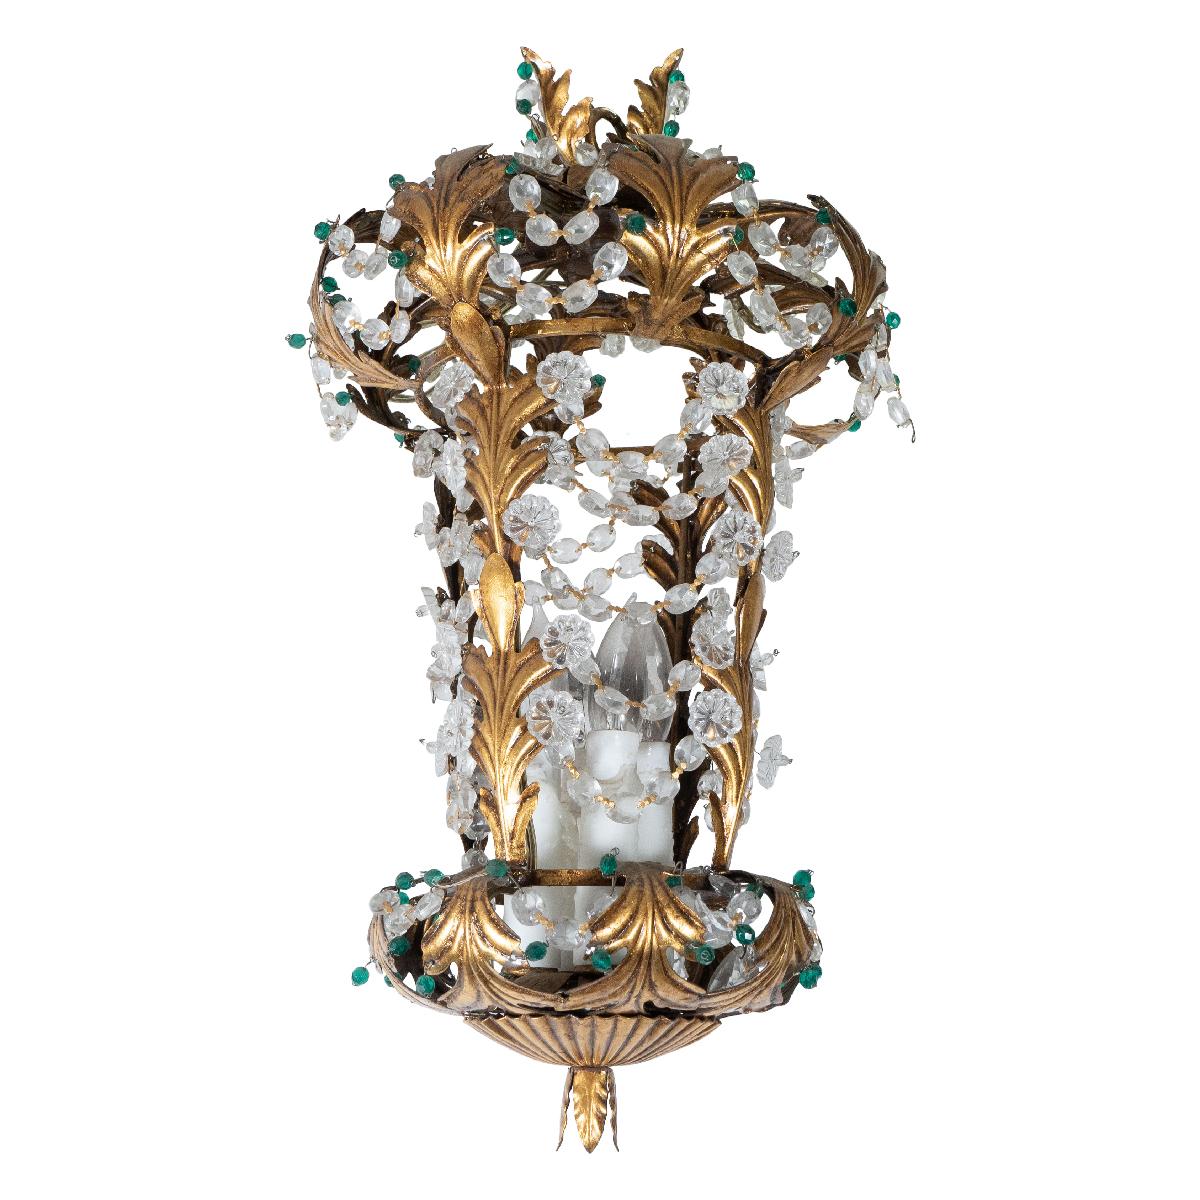 Pendentif en métal doré, de style lanterne, avec motif feuillagé et détails de feuilles et de fleurs en cristal à la manière de Bagues.